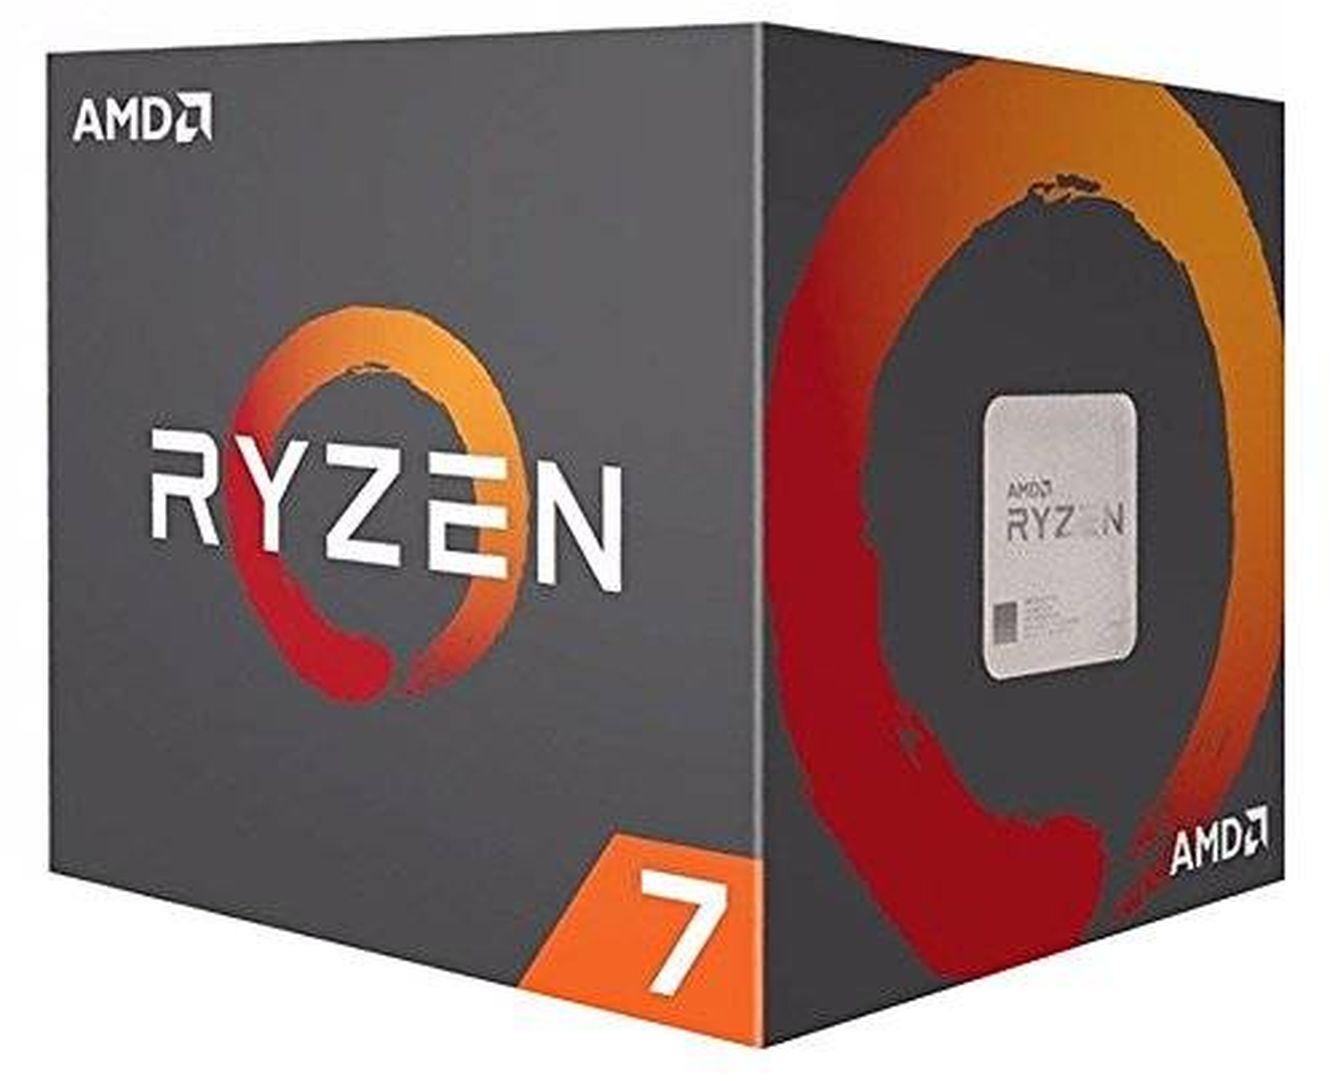 Descúbrete ante esta caja: estás ante el todopoderoso procesador Ryzen (Amazon)